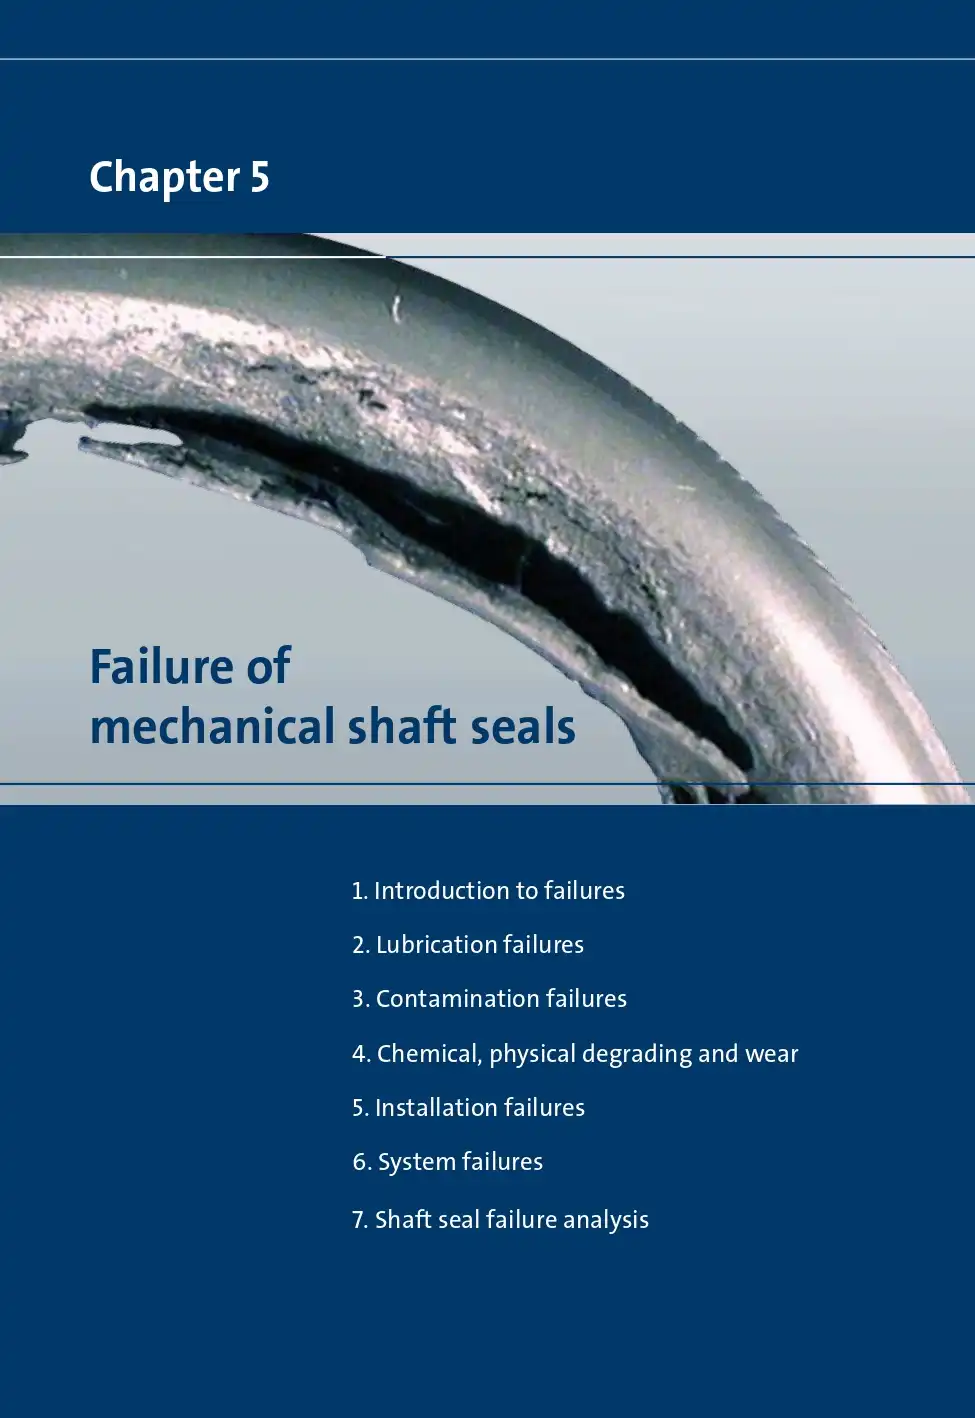 Failure of mechanical shaft seals